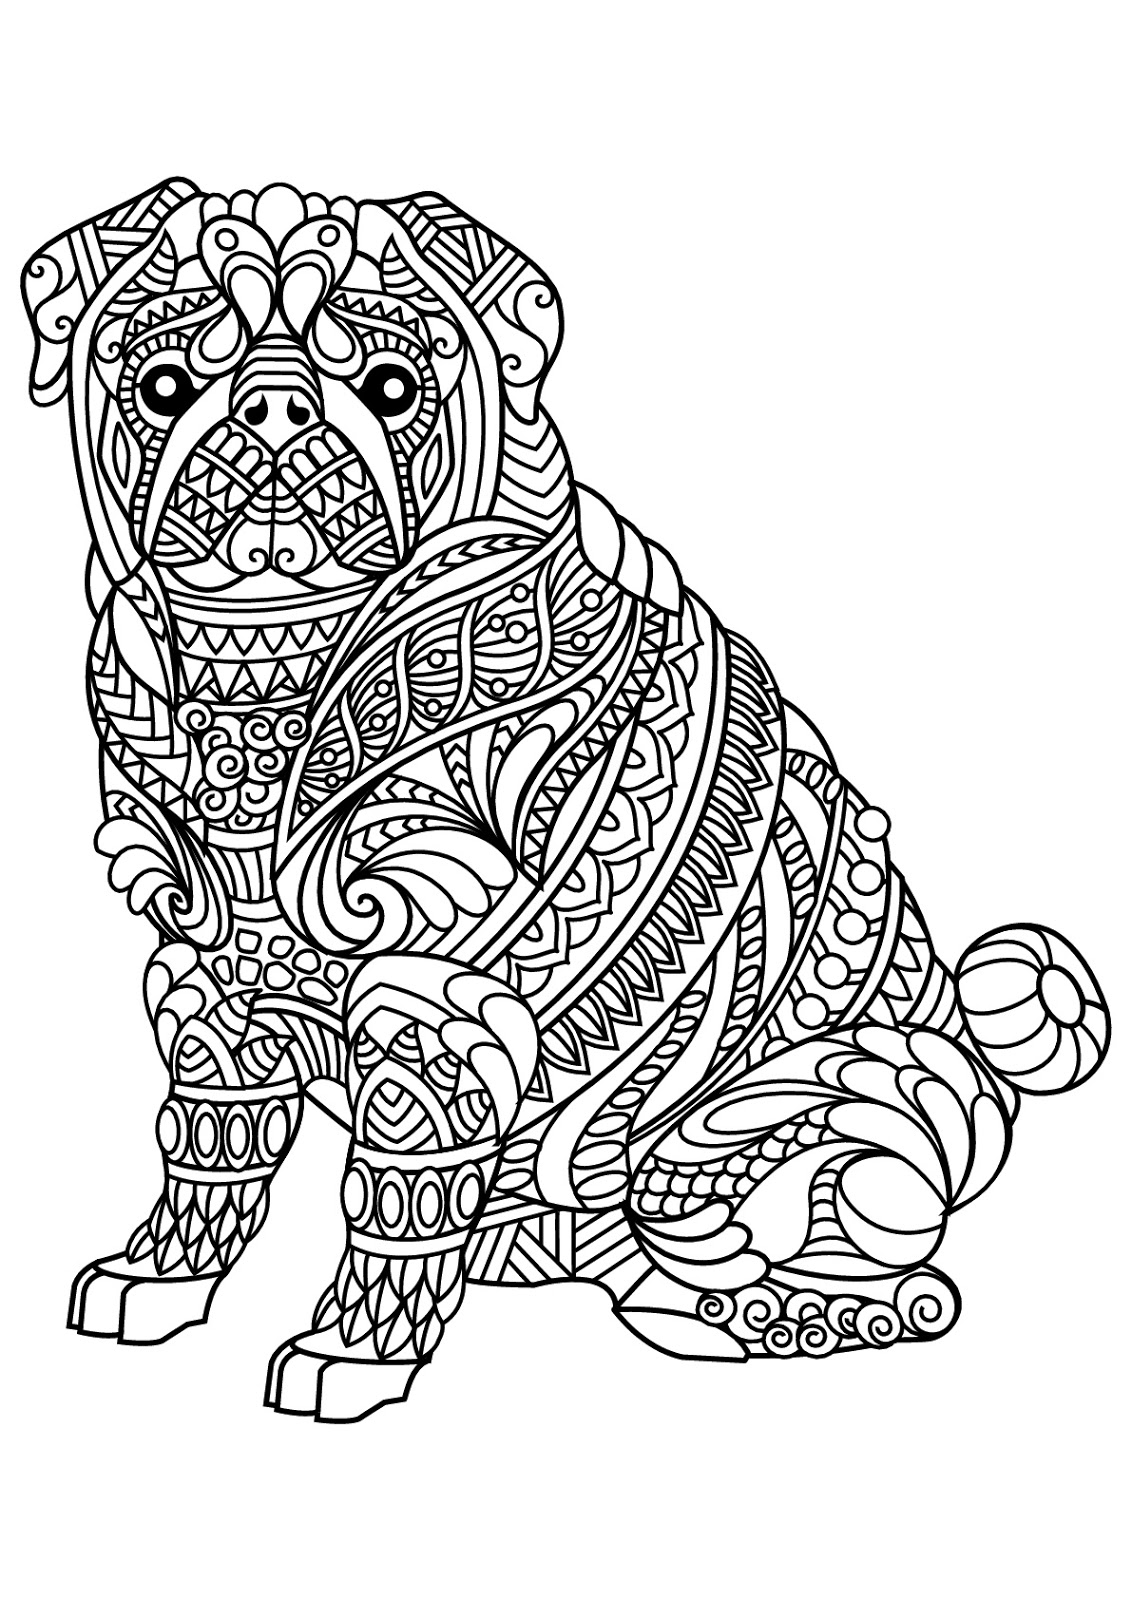 Tranh tô màu chú chó được vẽ trang trí lên người